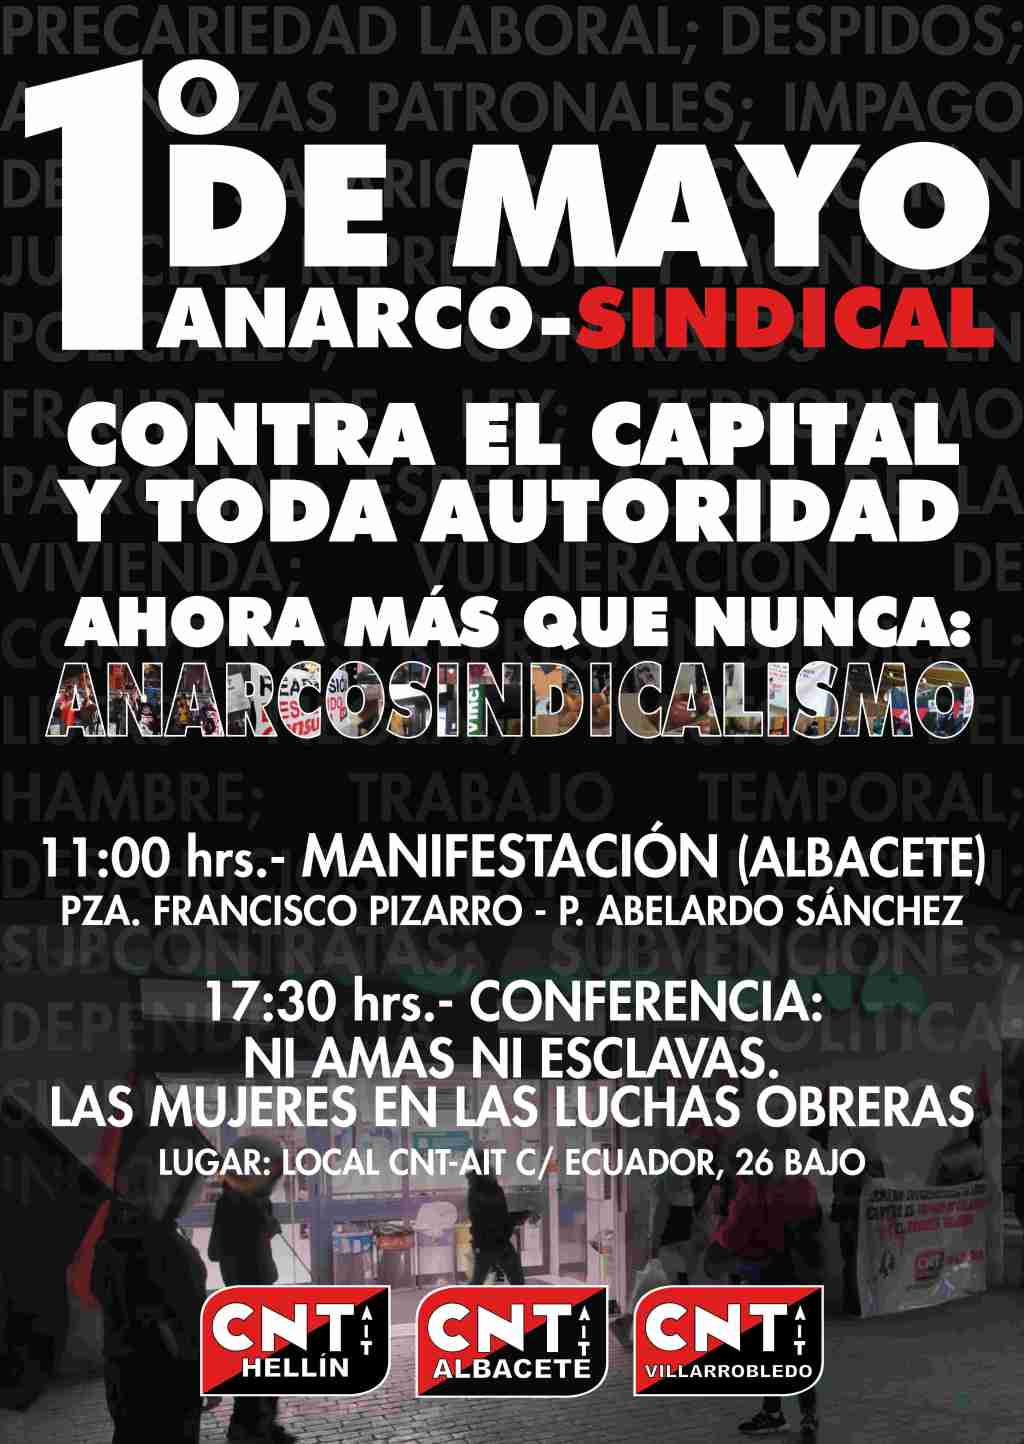 [1º MAYO] Contra el capital y toda autoridad, Ahora más que nunca Anarcosindicalismo.